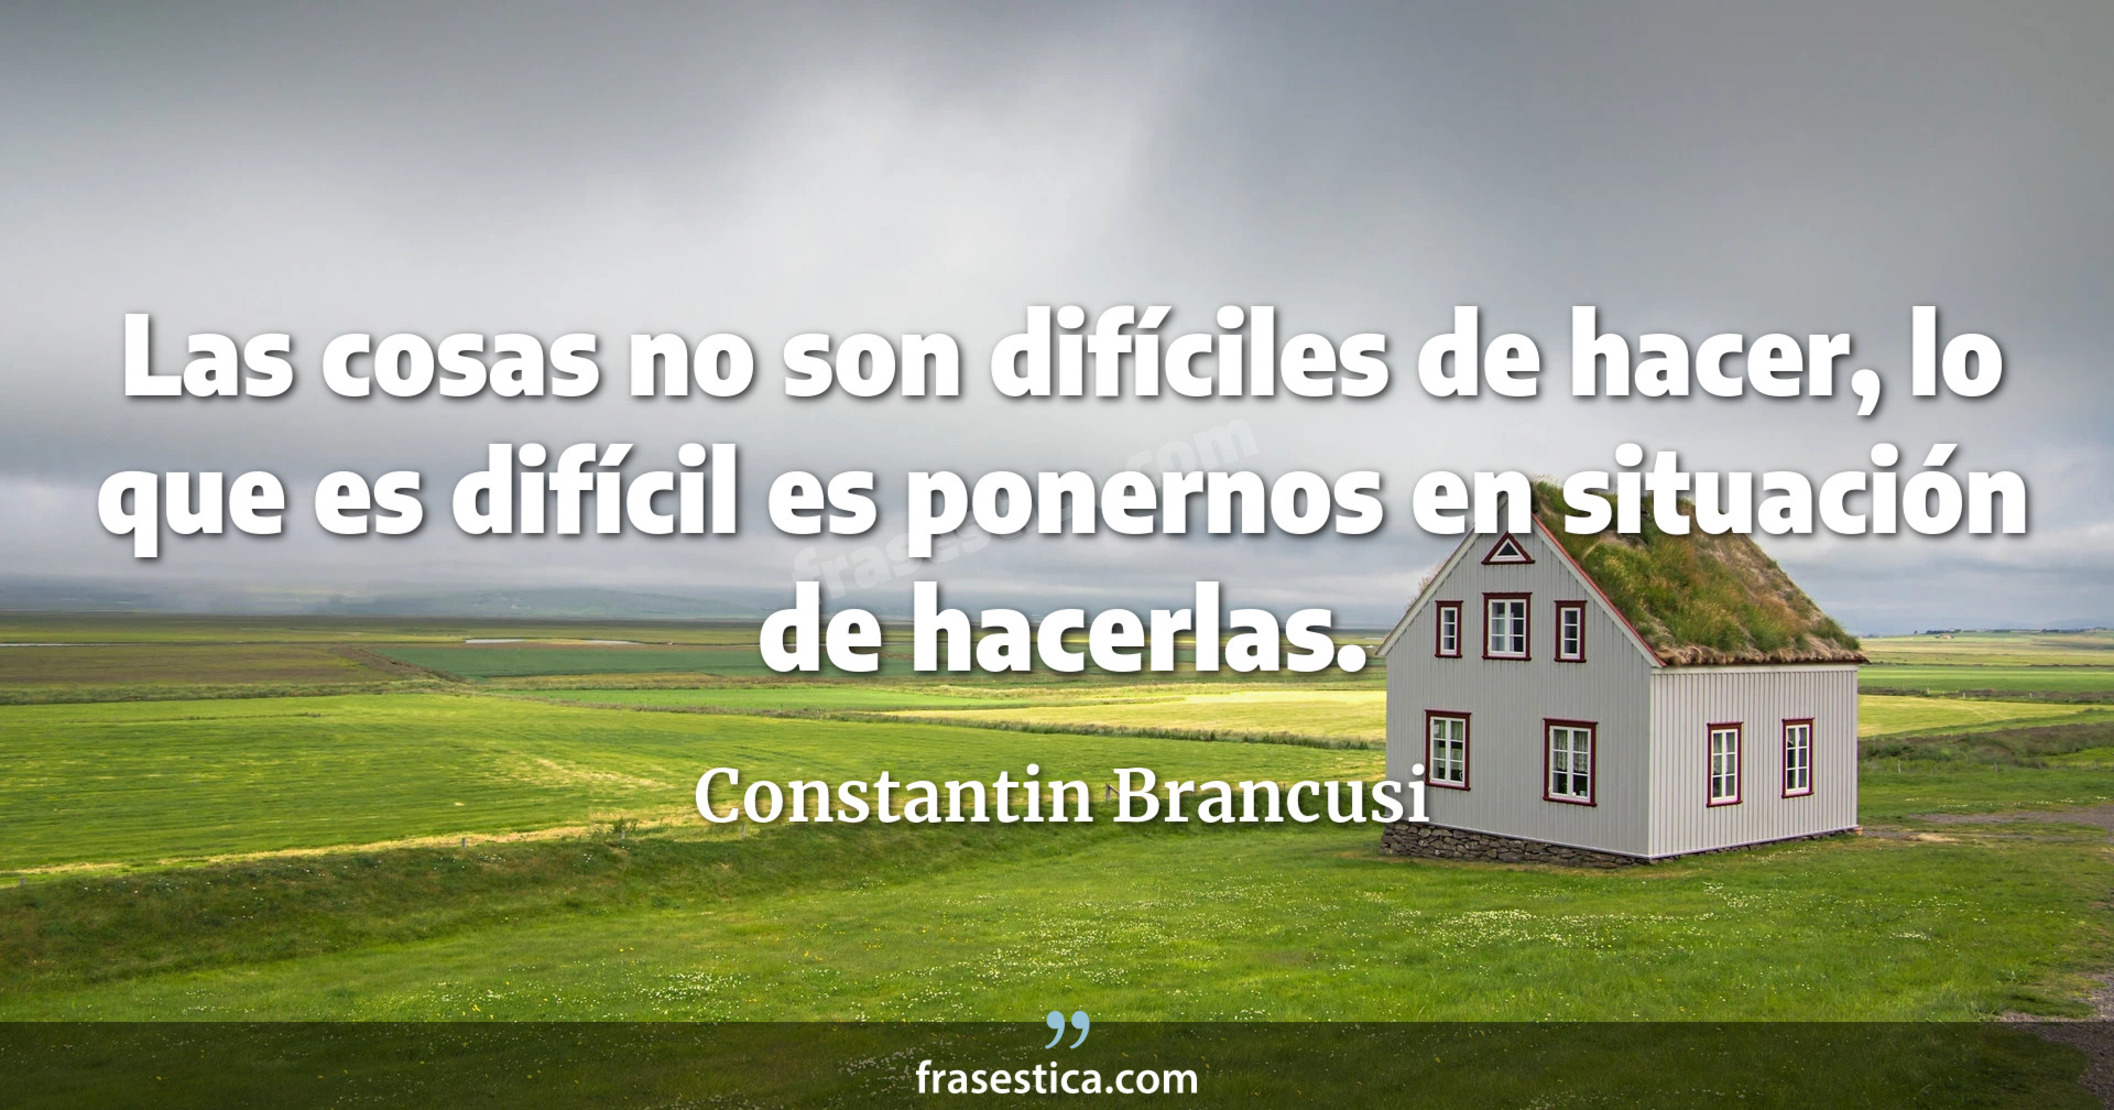 Las cosas no son difíciles de hacer, lo que es difícil es ponernos en situación de hacerlas. - Constantin Brancusi